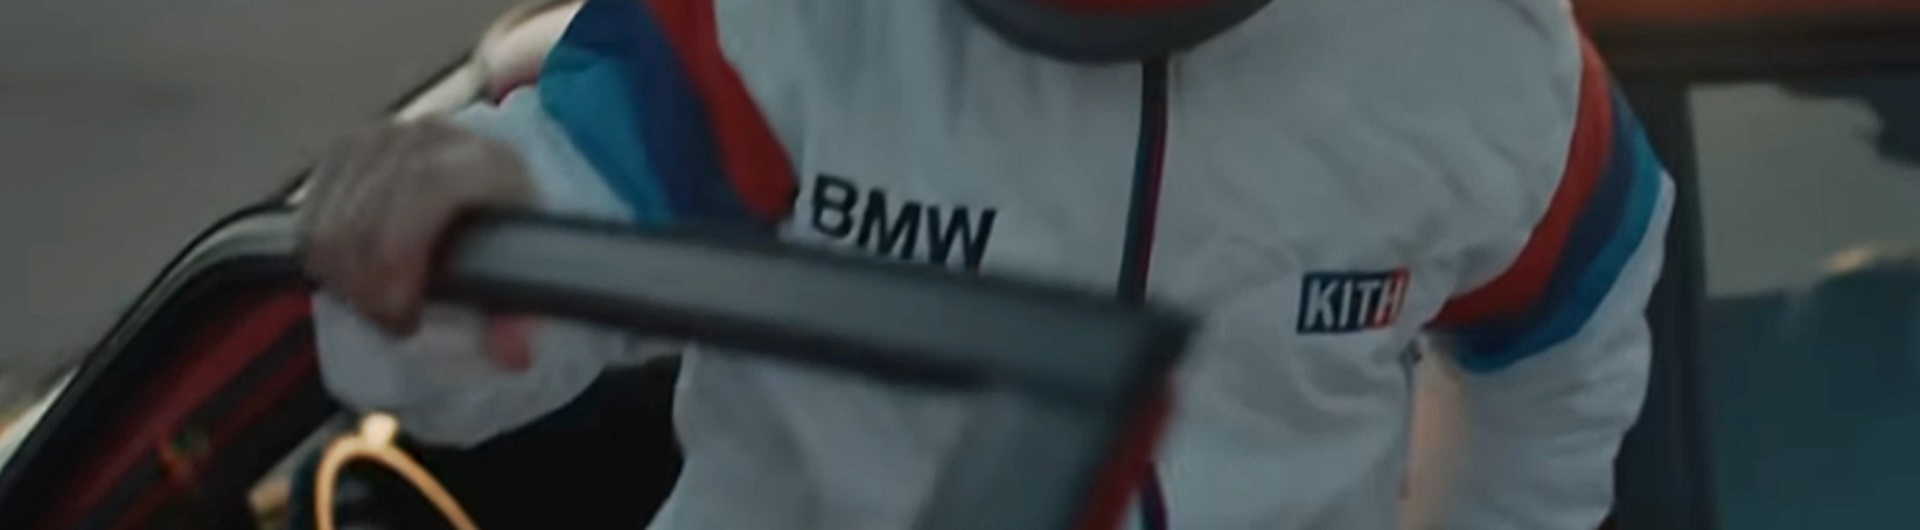 Ciuszki z logo BMW, whisky od Astona Martina. Nowe drogi dotarcia do kierowców